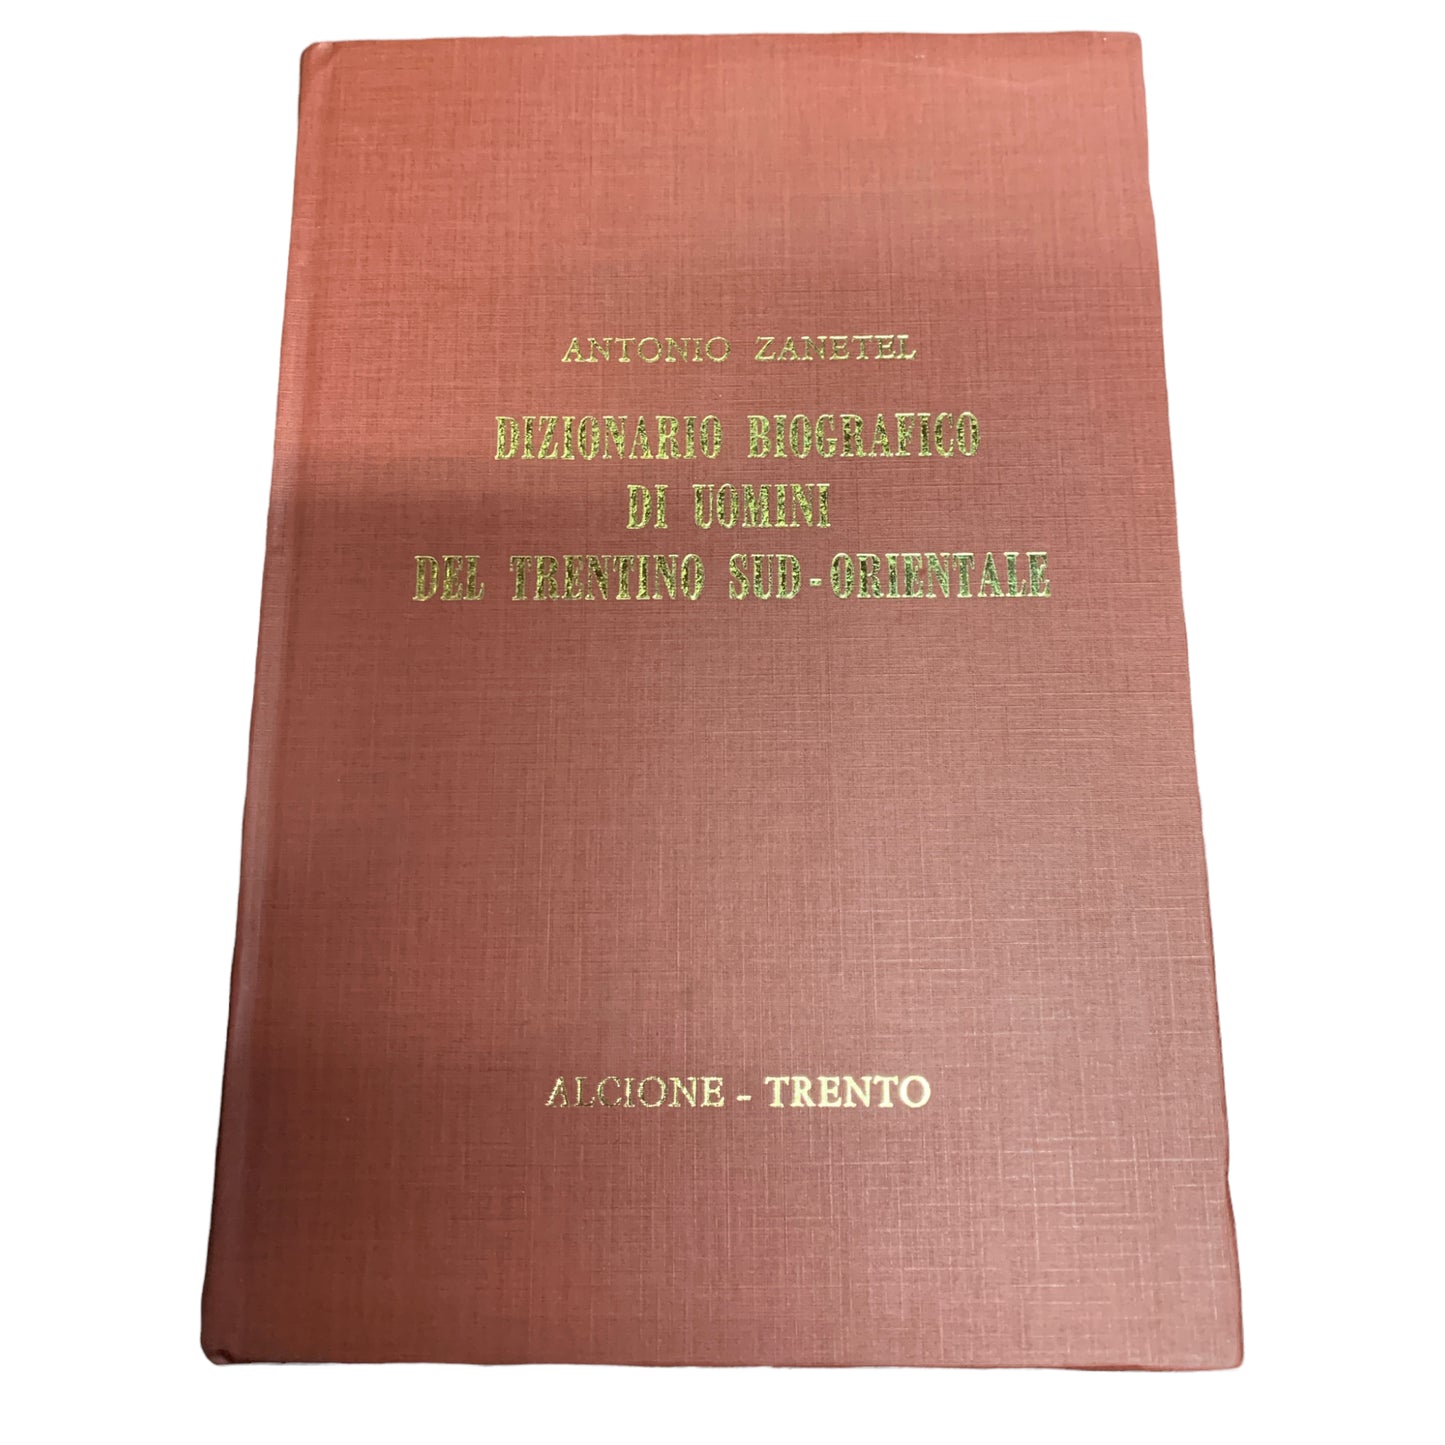 Biographisches Wörterbuch der Männer aus dem Südosten des Trentino - Antonio Zanetel